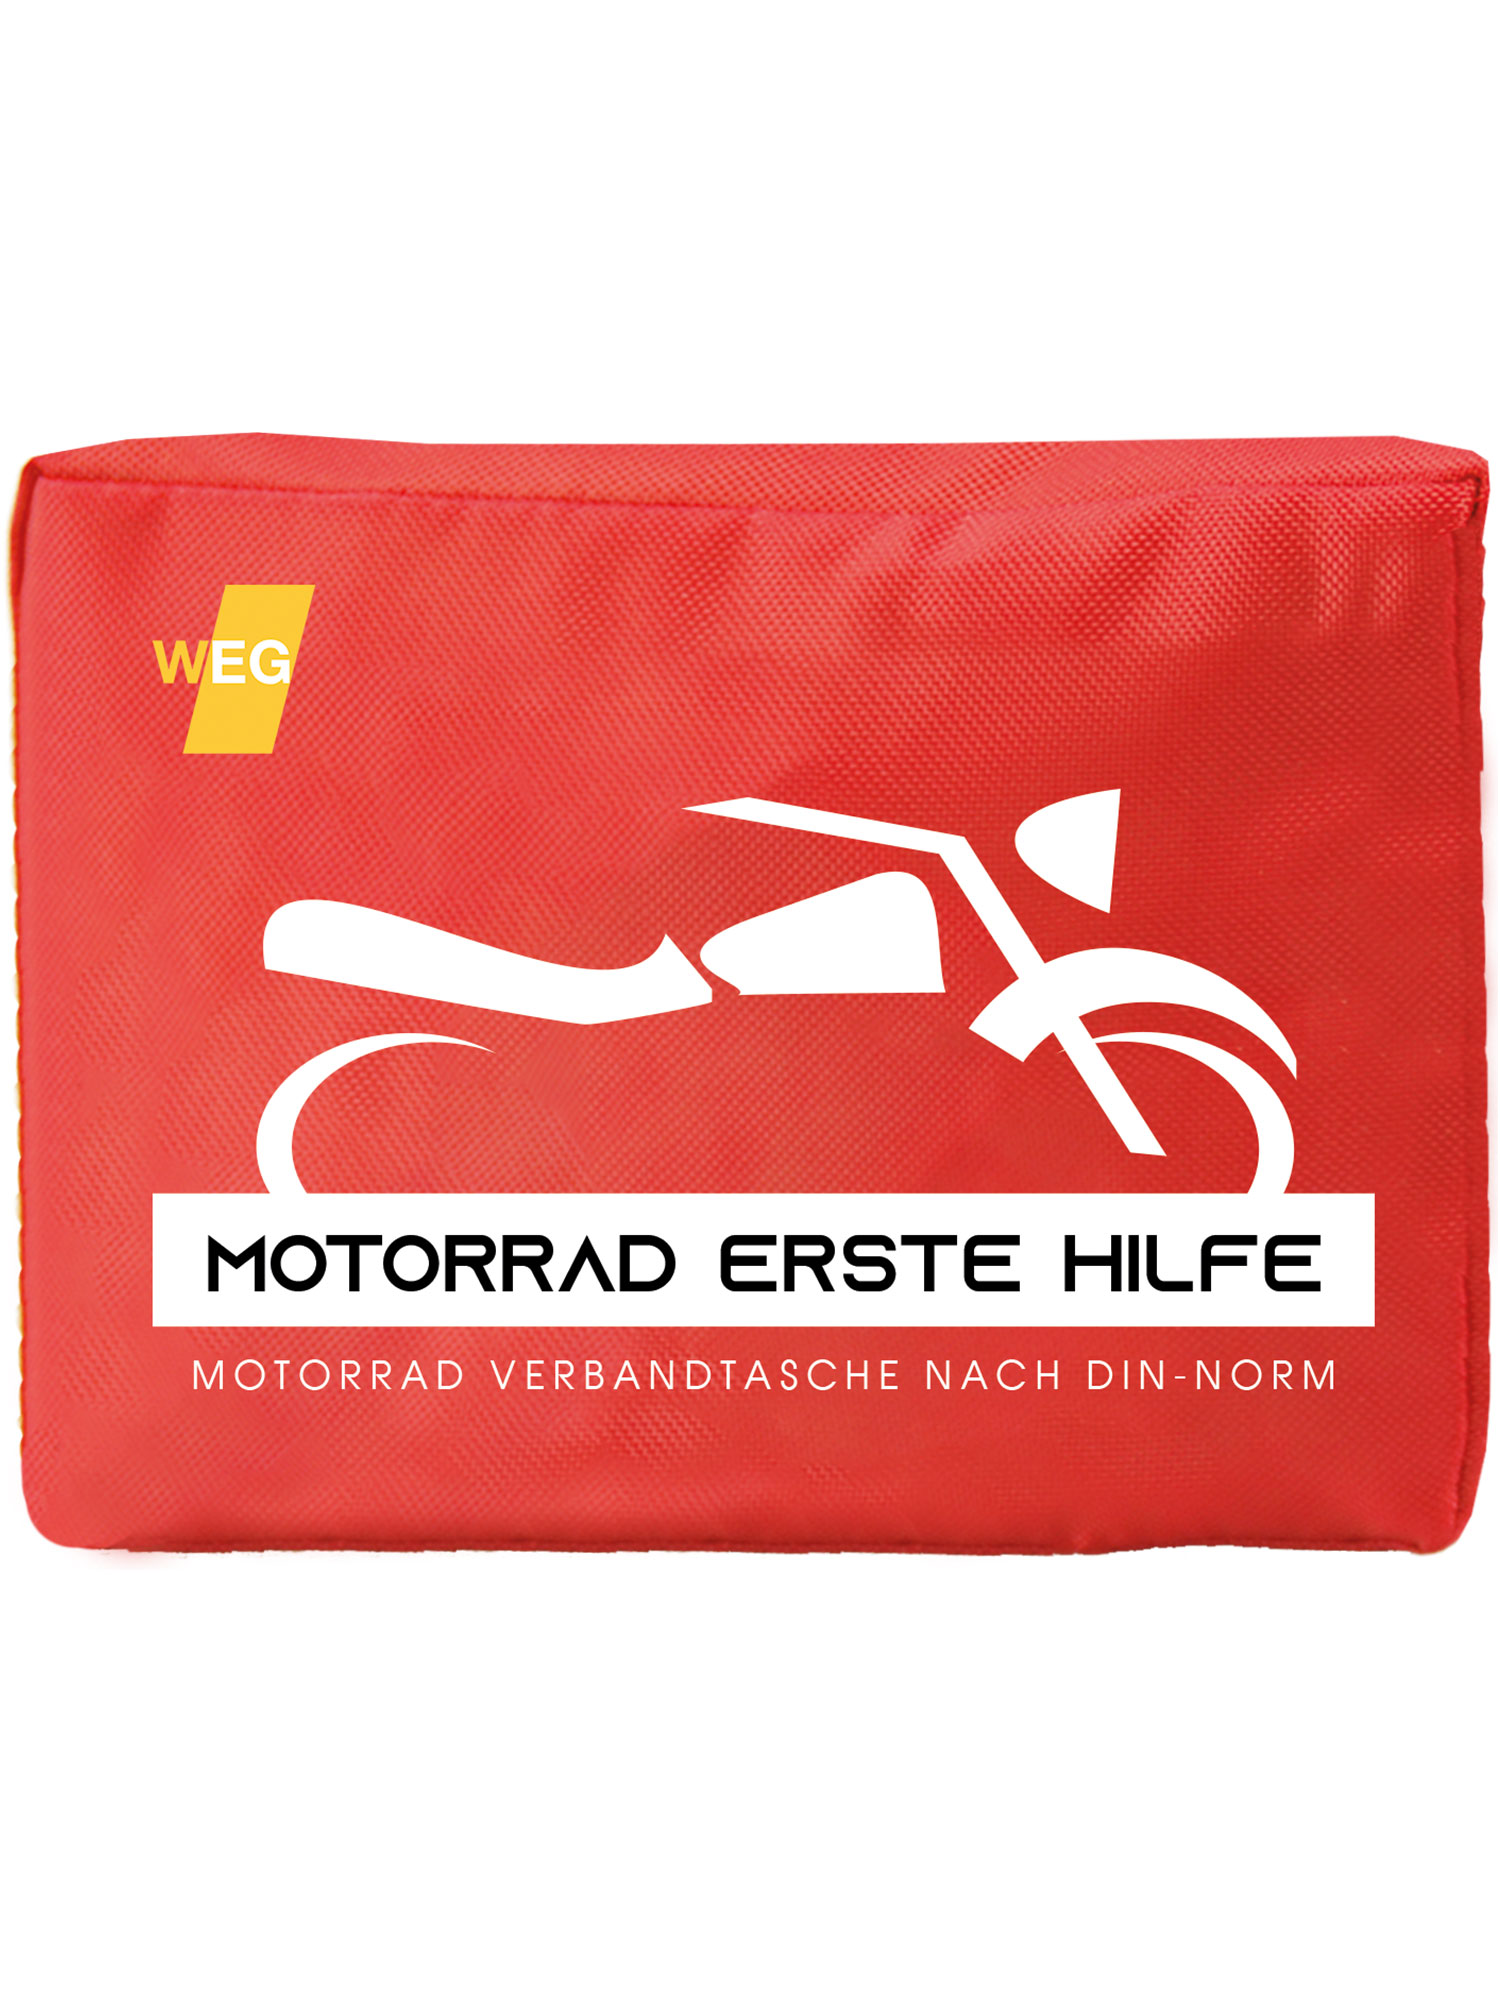 ACTIOMEDIC® Fahrrad- und Freizeit Verbandtasche 